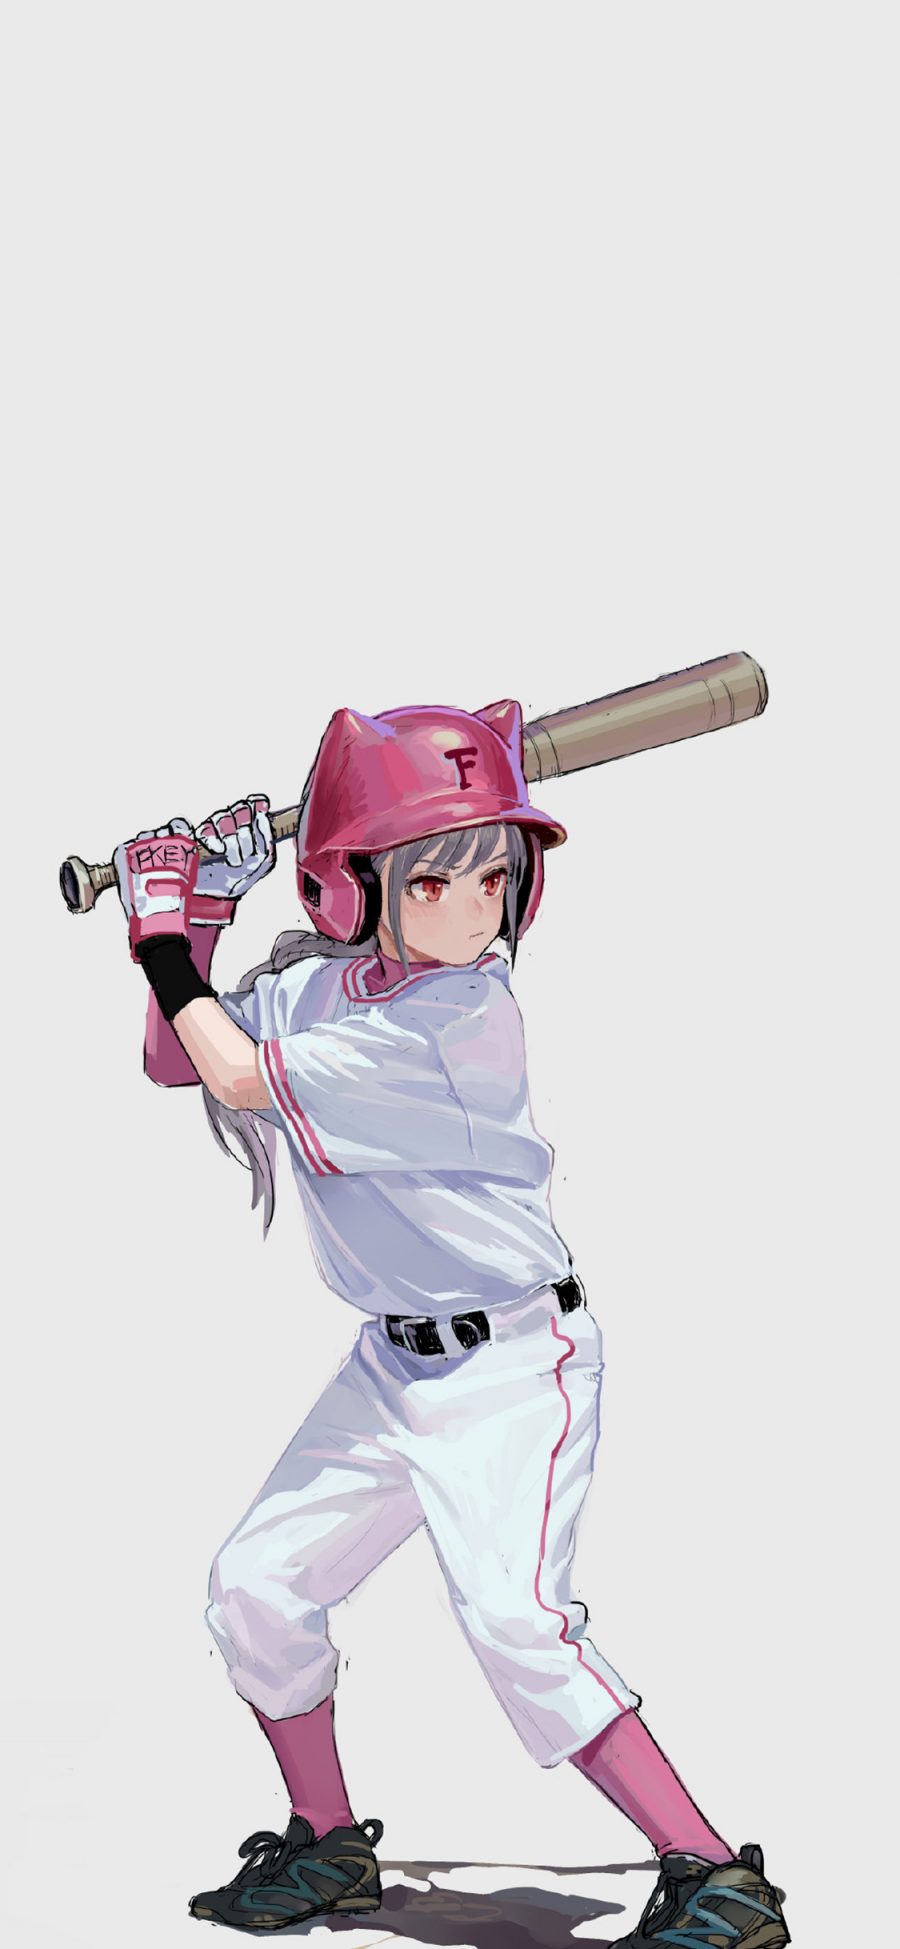 [2436×1125]手绘 棒球女孩 二次元 少女 苹果手机动漫壁纸图片